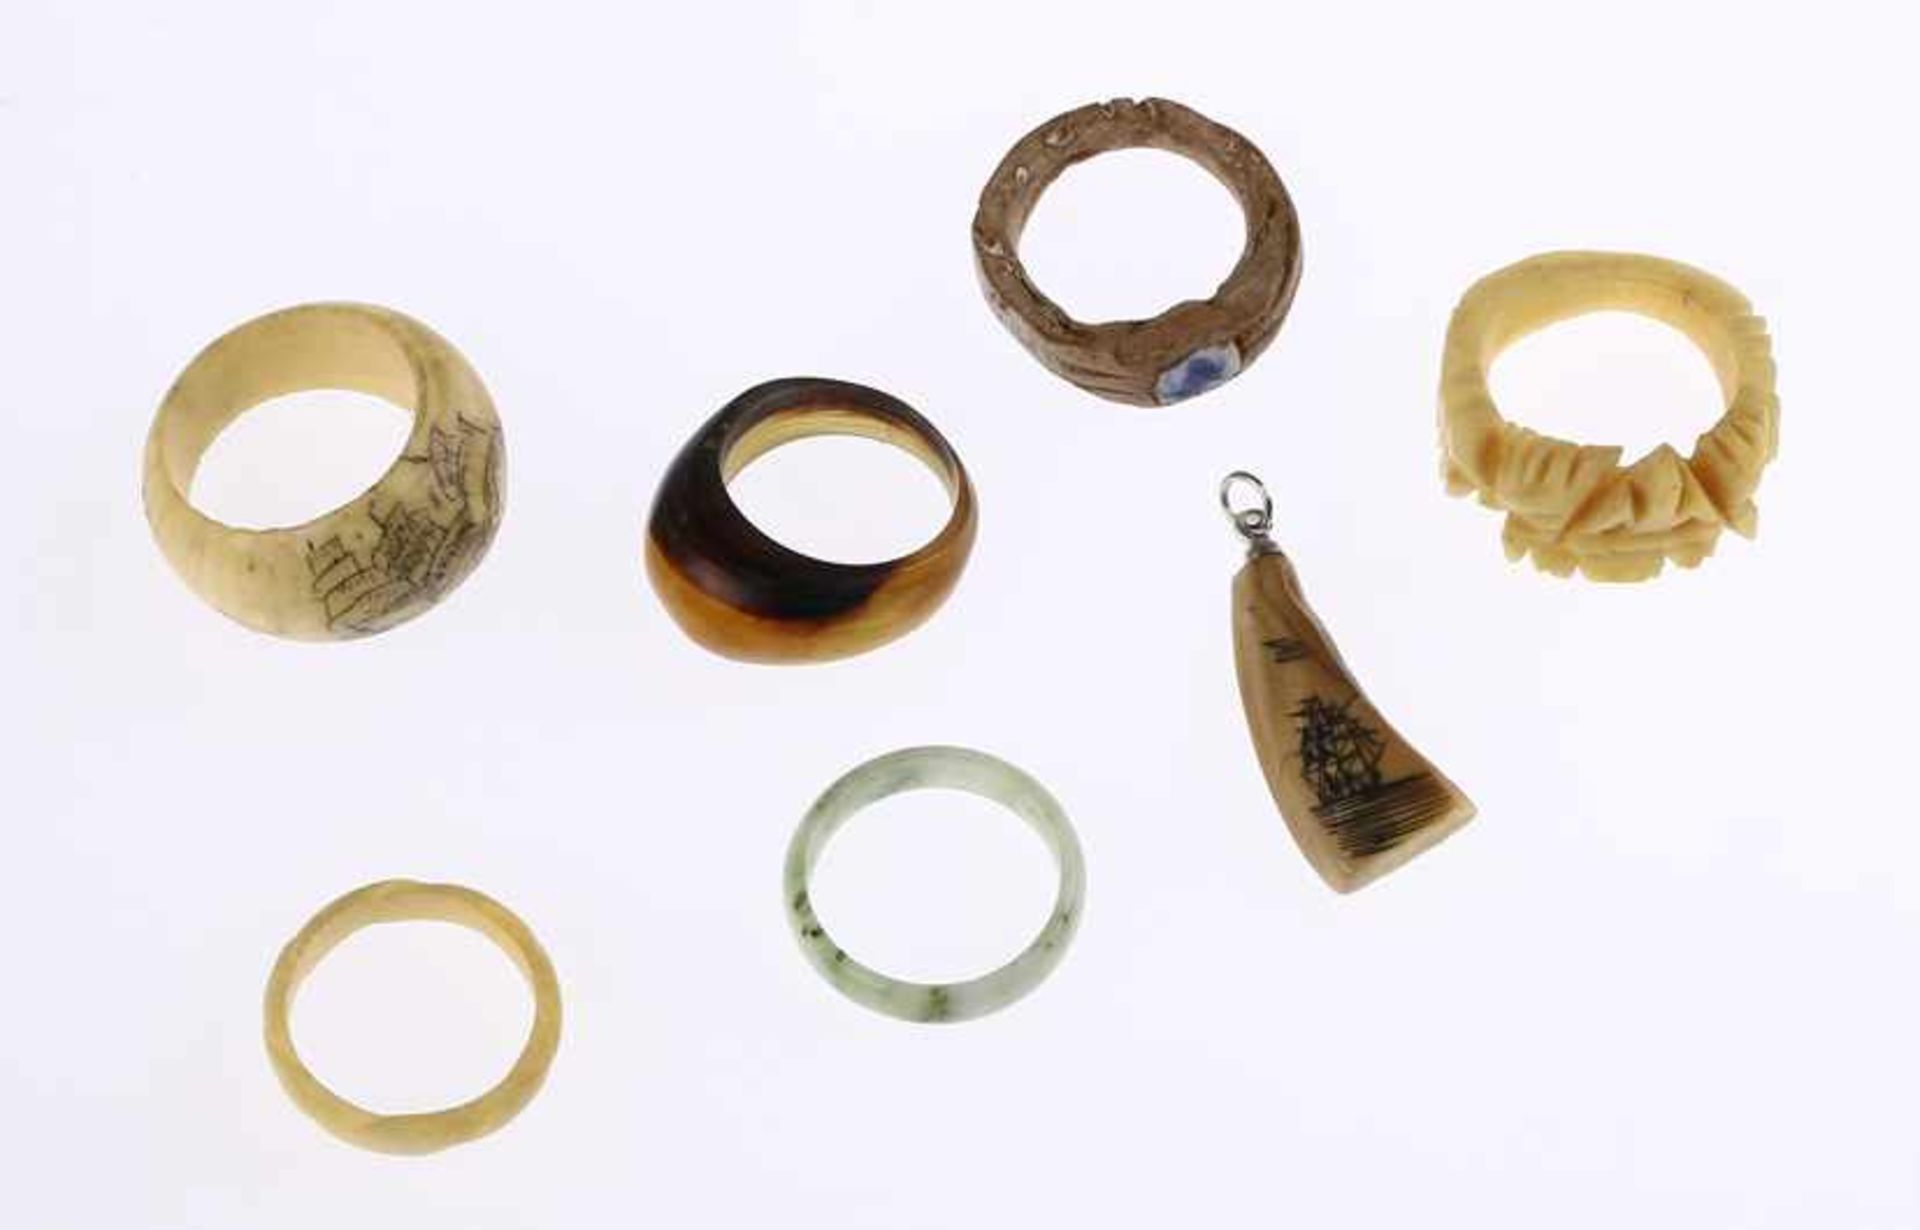 Zes ringen en hanger, alle gemaakt van natuurlijke materialen of mineraal, waaronder been (twee